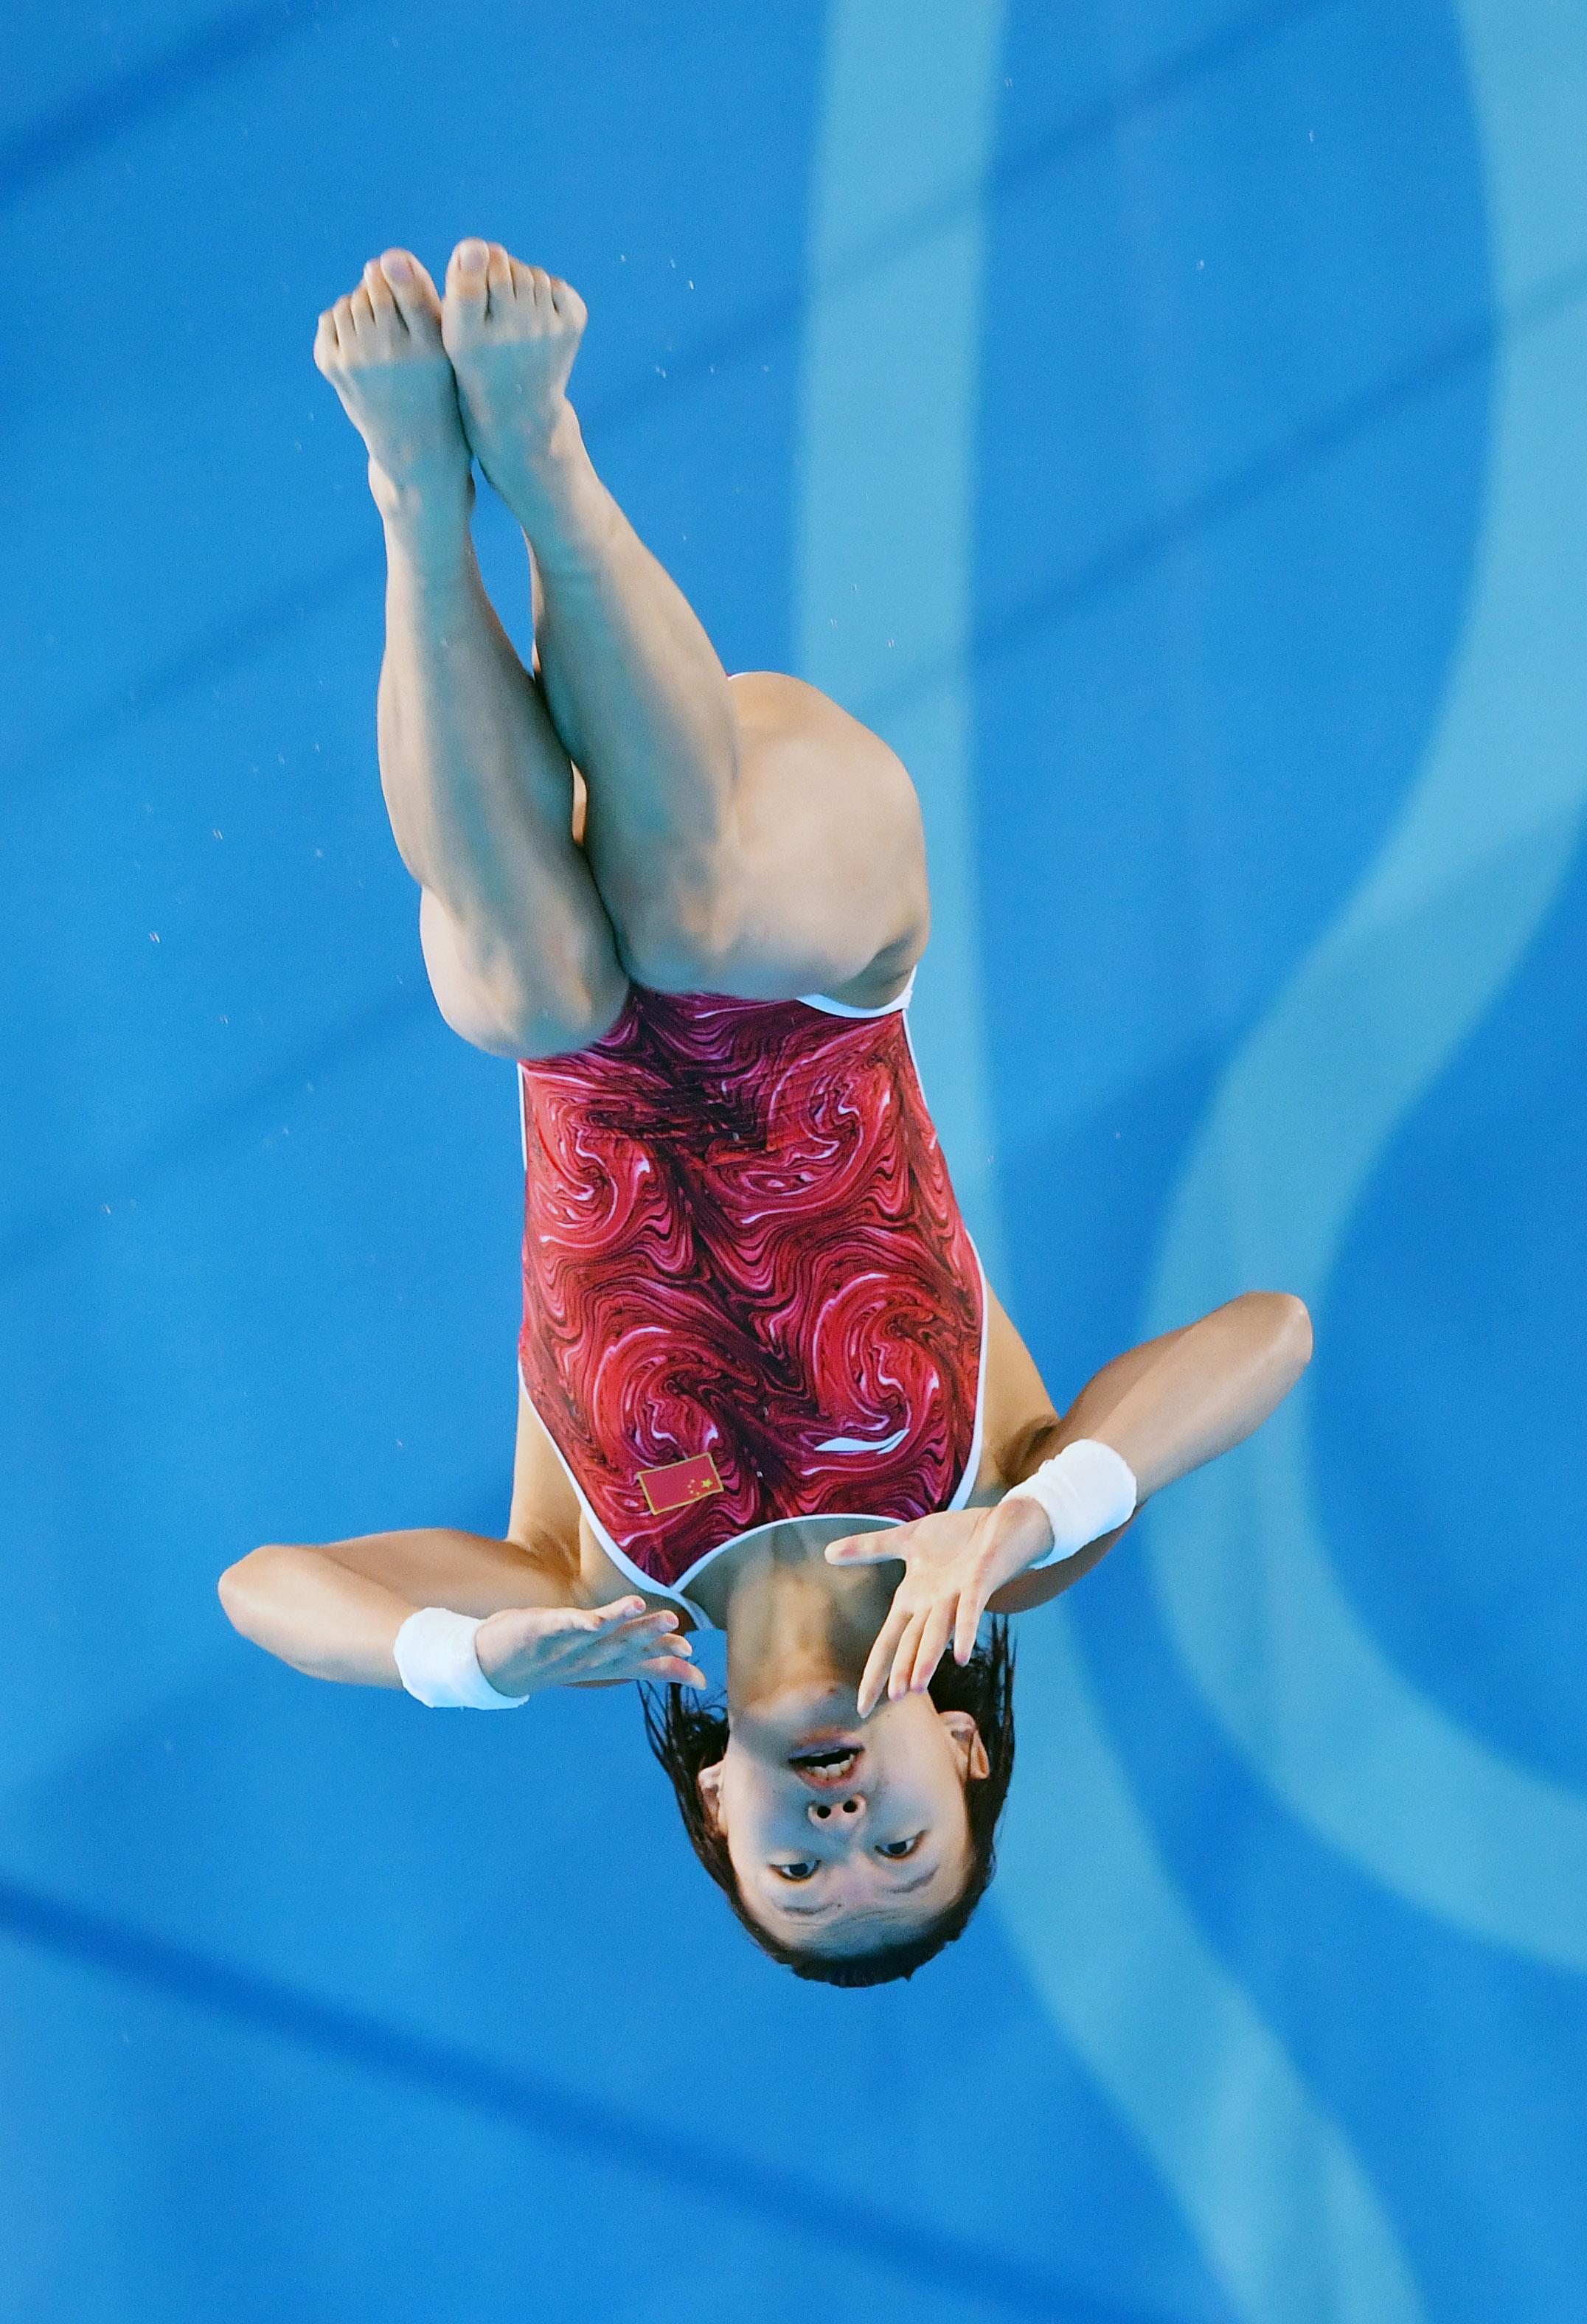 中国跳水女冠军图片